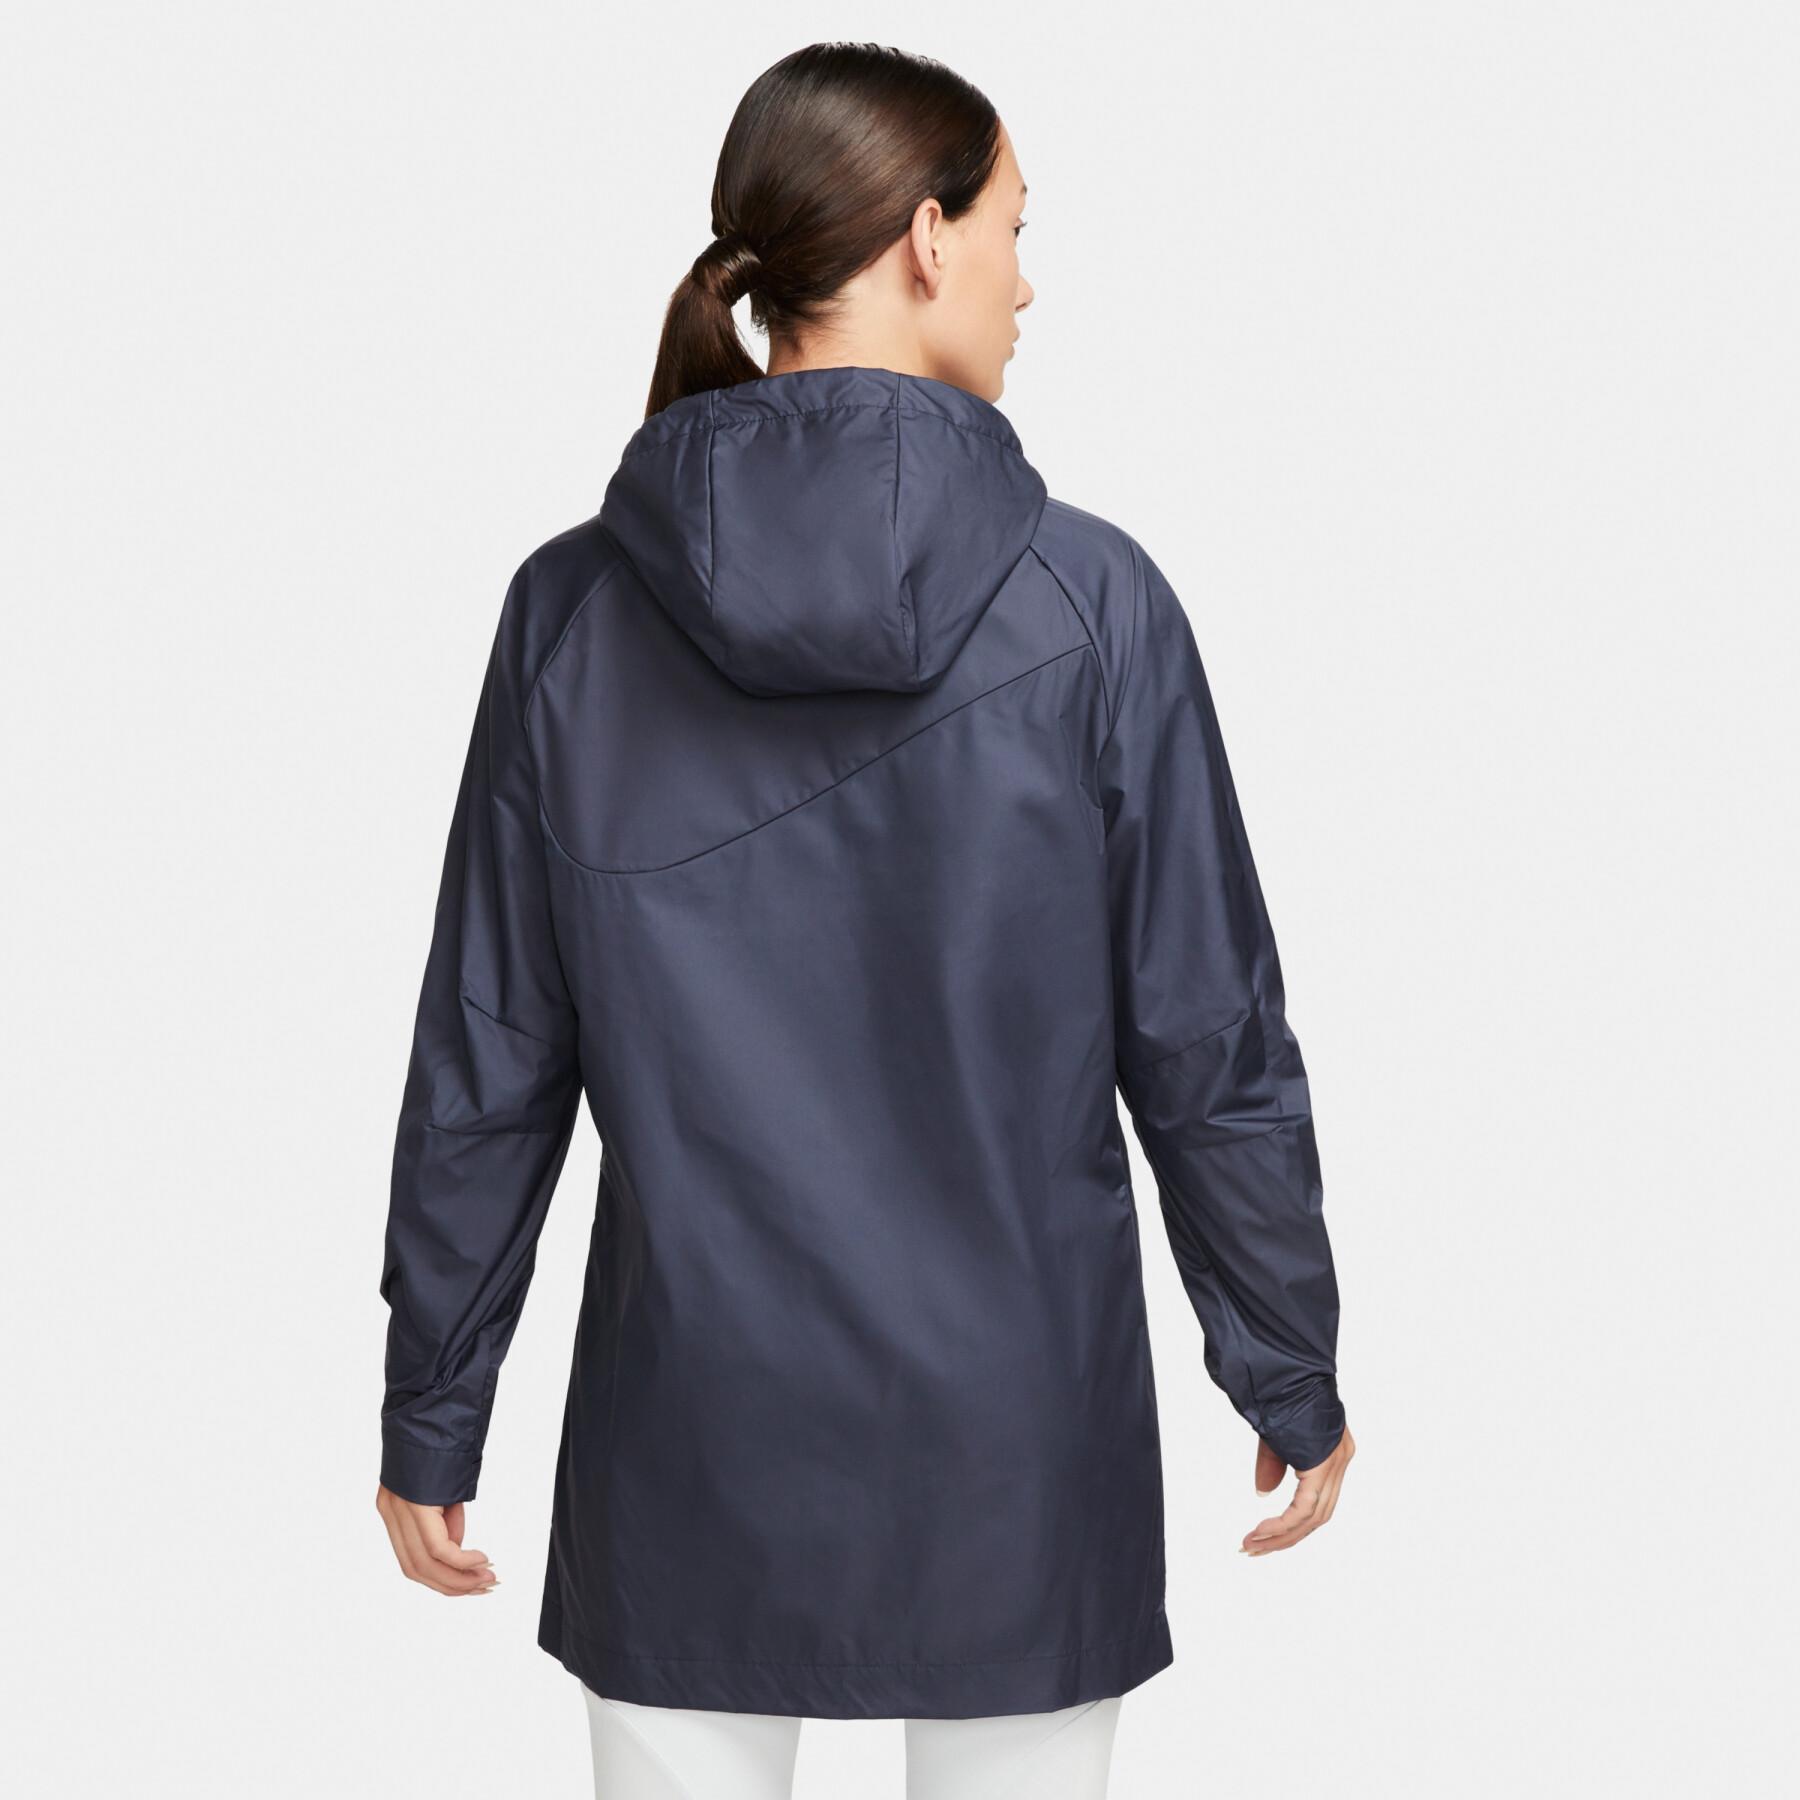 Women's waterproof jacket Nike SF Academy Pro HD